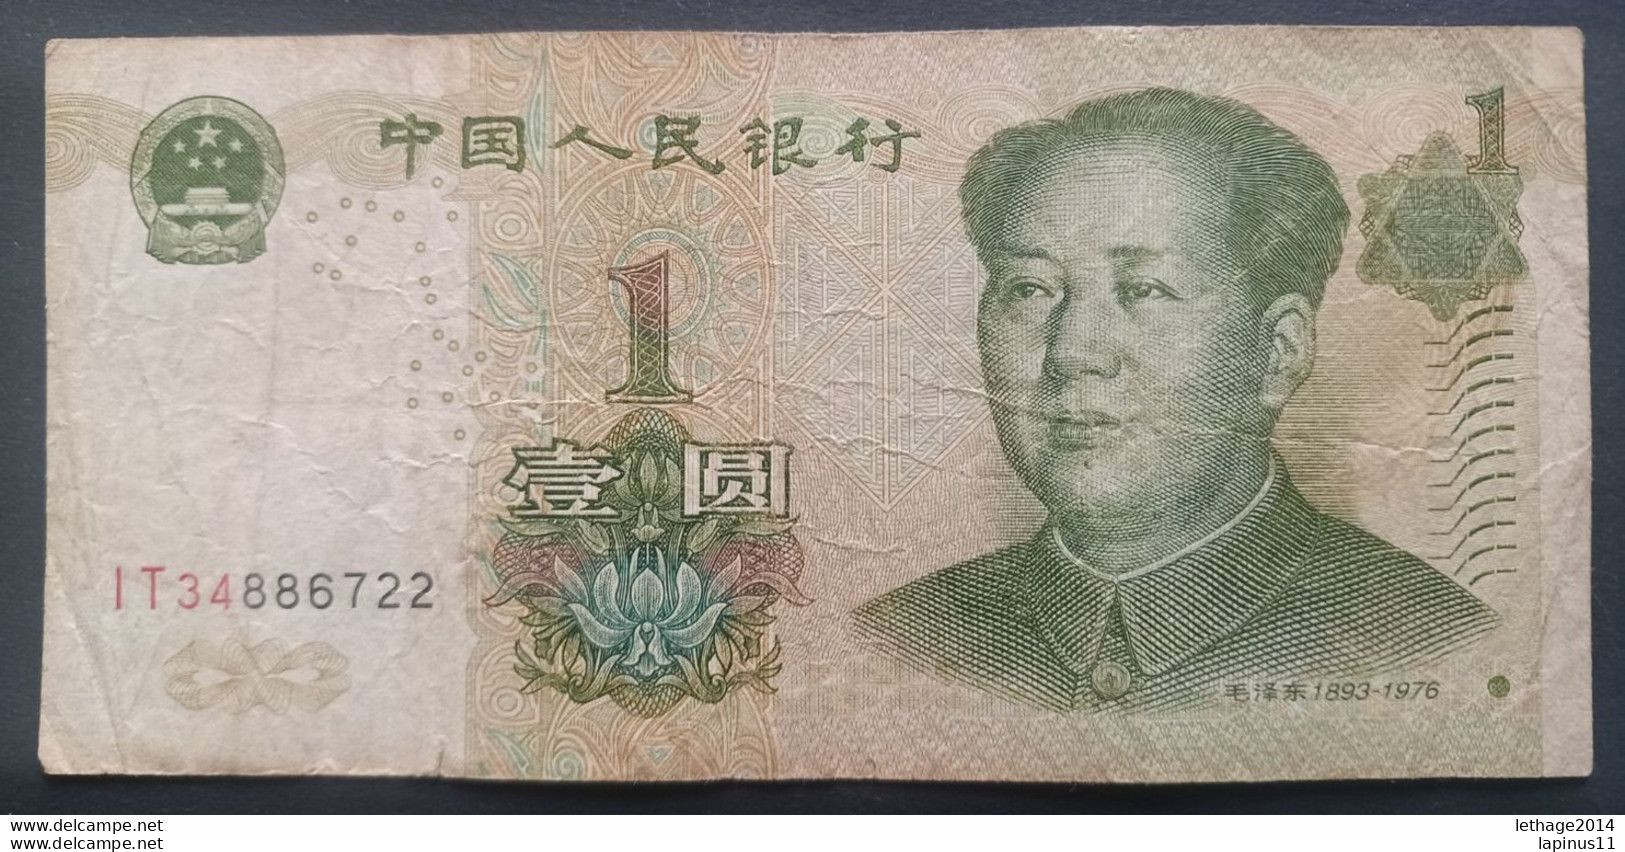 BANKNOTE CINA 1 YUAN 1999 MAO TSE TUNG CIRCULATED SUPERB 中國 - China